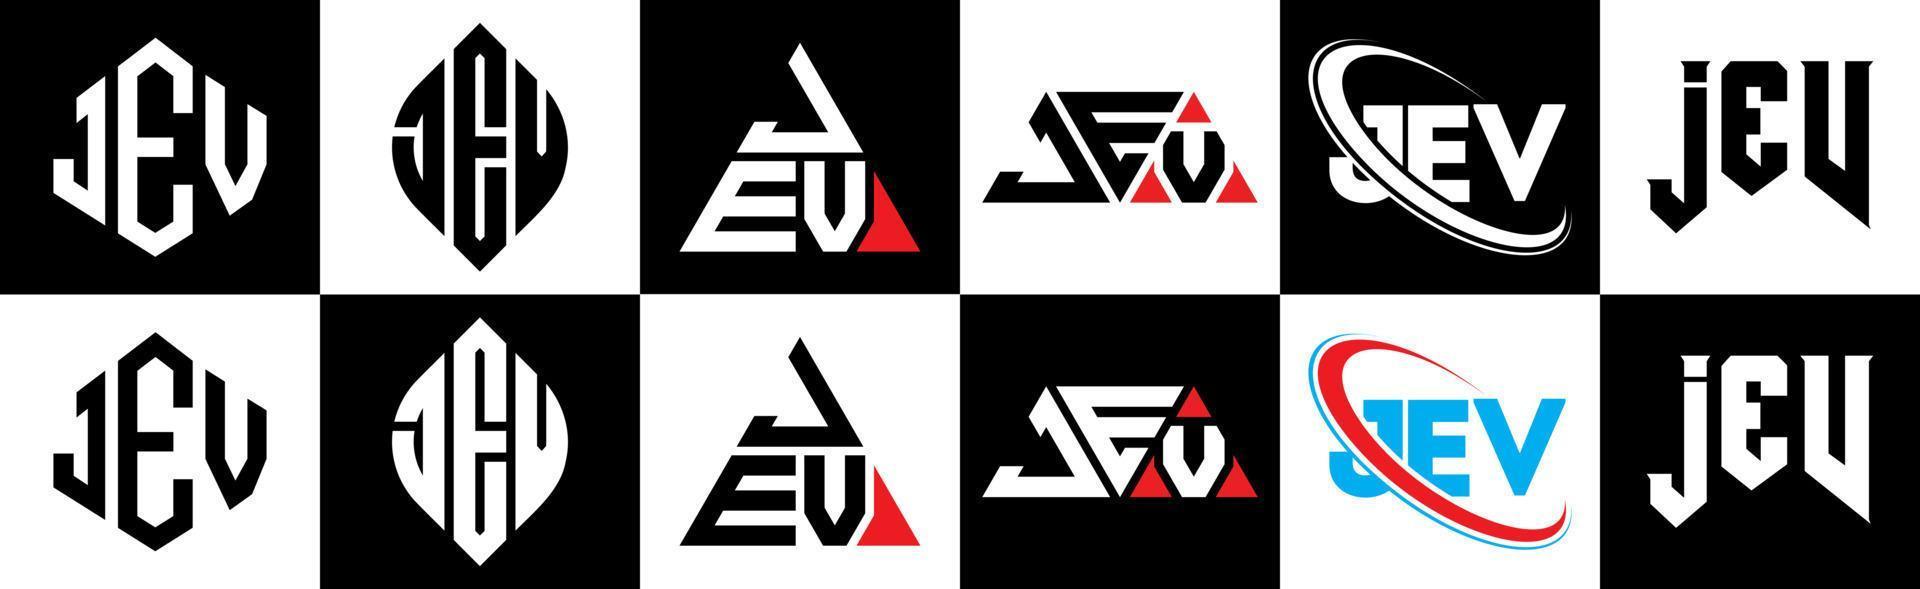 Jev-Buchstaben-Logo-Design in sechs Stilen. jev polygon, kreis, dreieck, sechseck, flacher und einfacher stil mit schwarz-weißem buchstabenlogo in einer zeichenfläche. Jev minimalistisches und klassisches Logo vektor